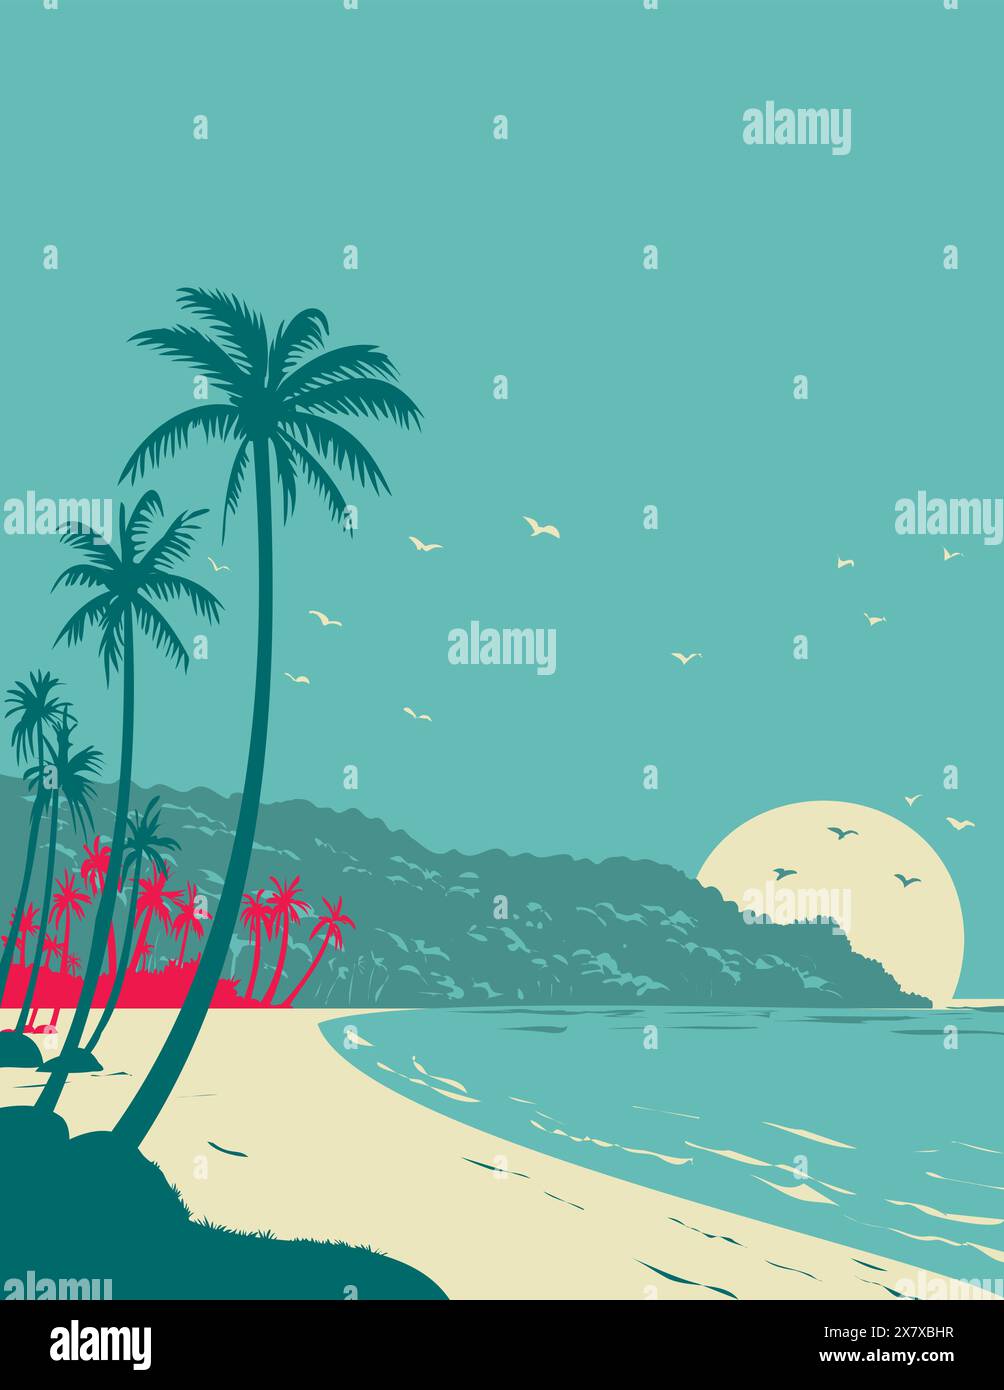 WPA-Posterkunst von Long Beach Phu Quoc bei Sonnenaufgang oder Sonnenuntergang in der Provinz Kien Giang, Vietnam, in der Verwaltung von Bauprojekten oder im Art déco-Stil Stock Vektor